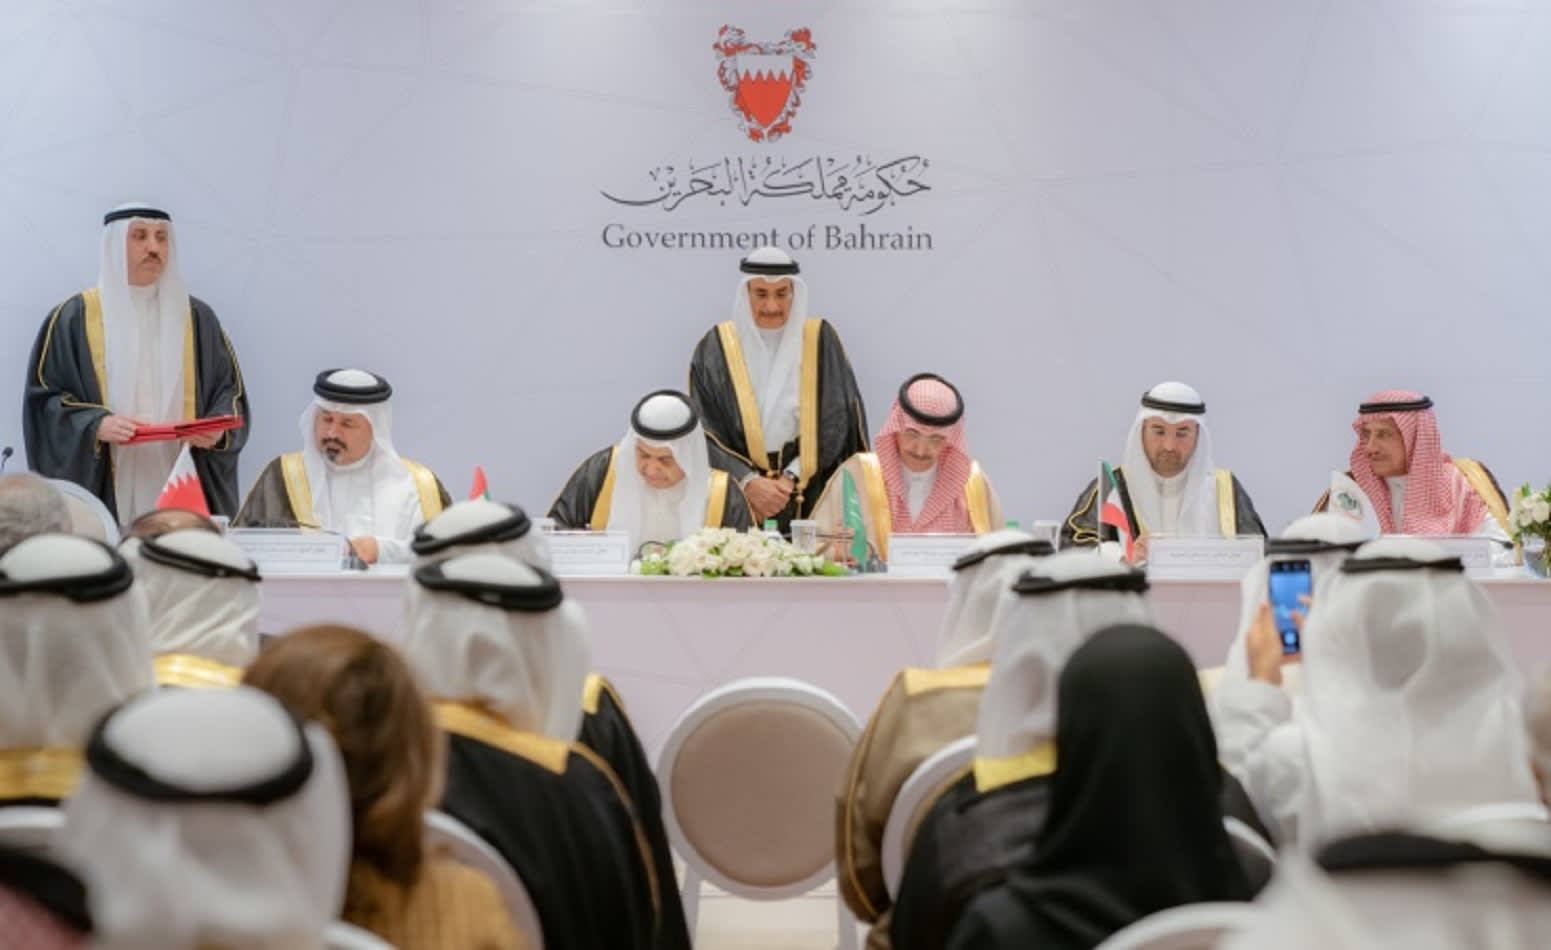 دعم مالي من 3 دول خليجية إلى البحرين.. ما قيمة الاتفاقية؟